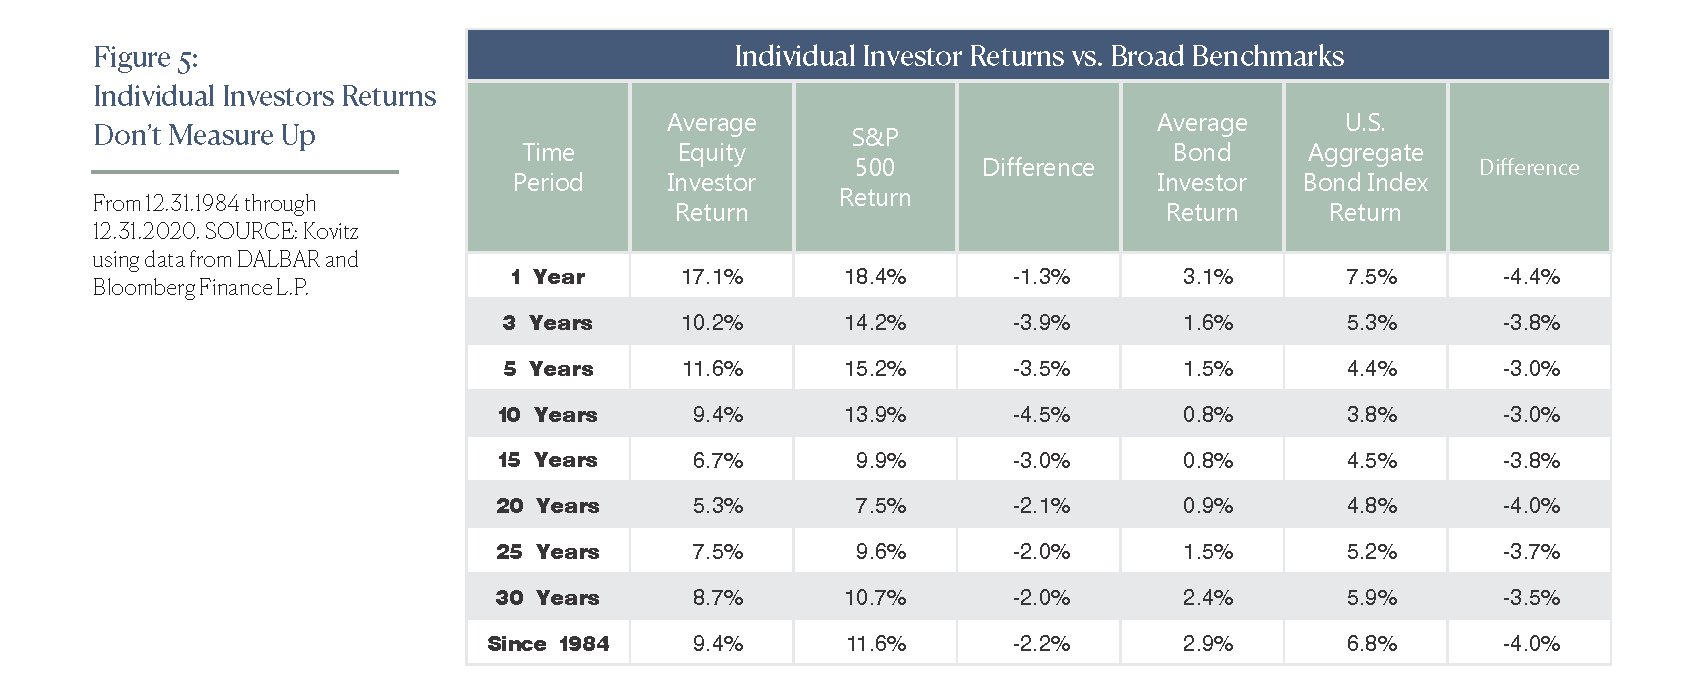 Individual Investors Returns Don’t Measure Up